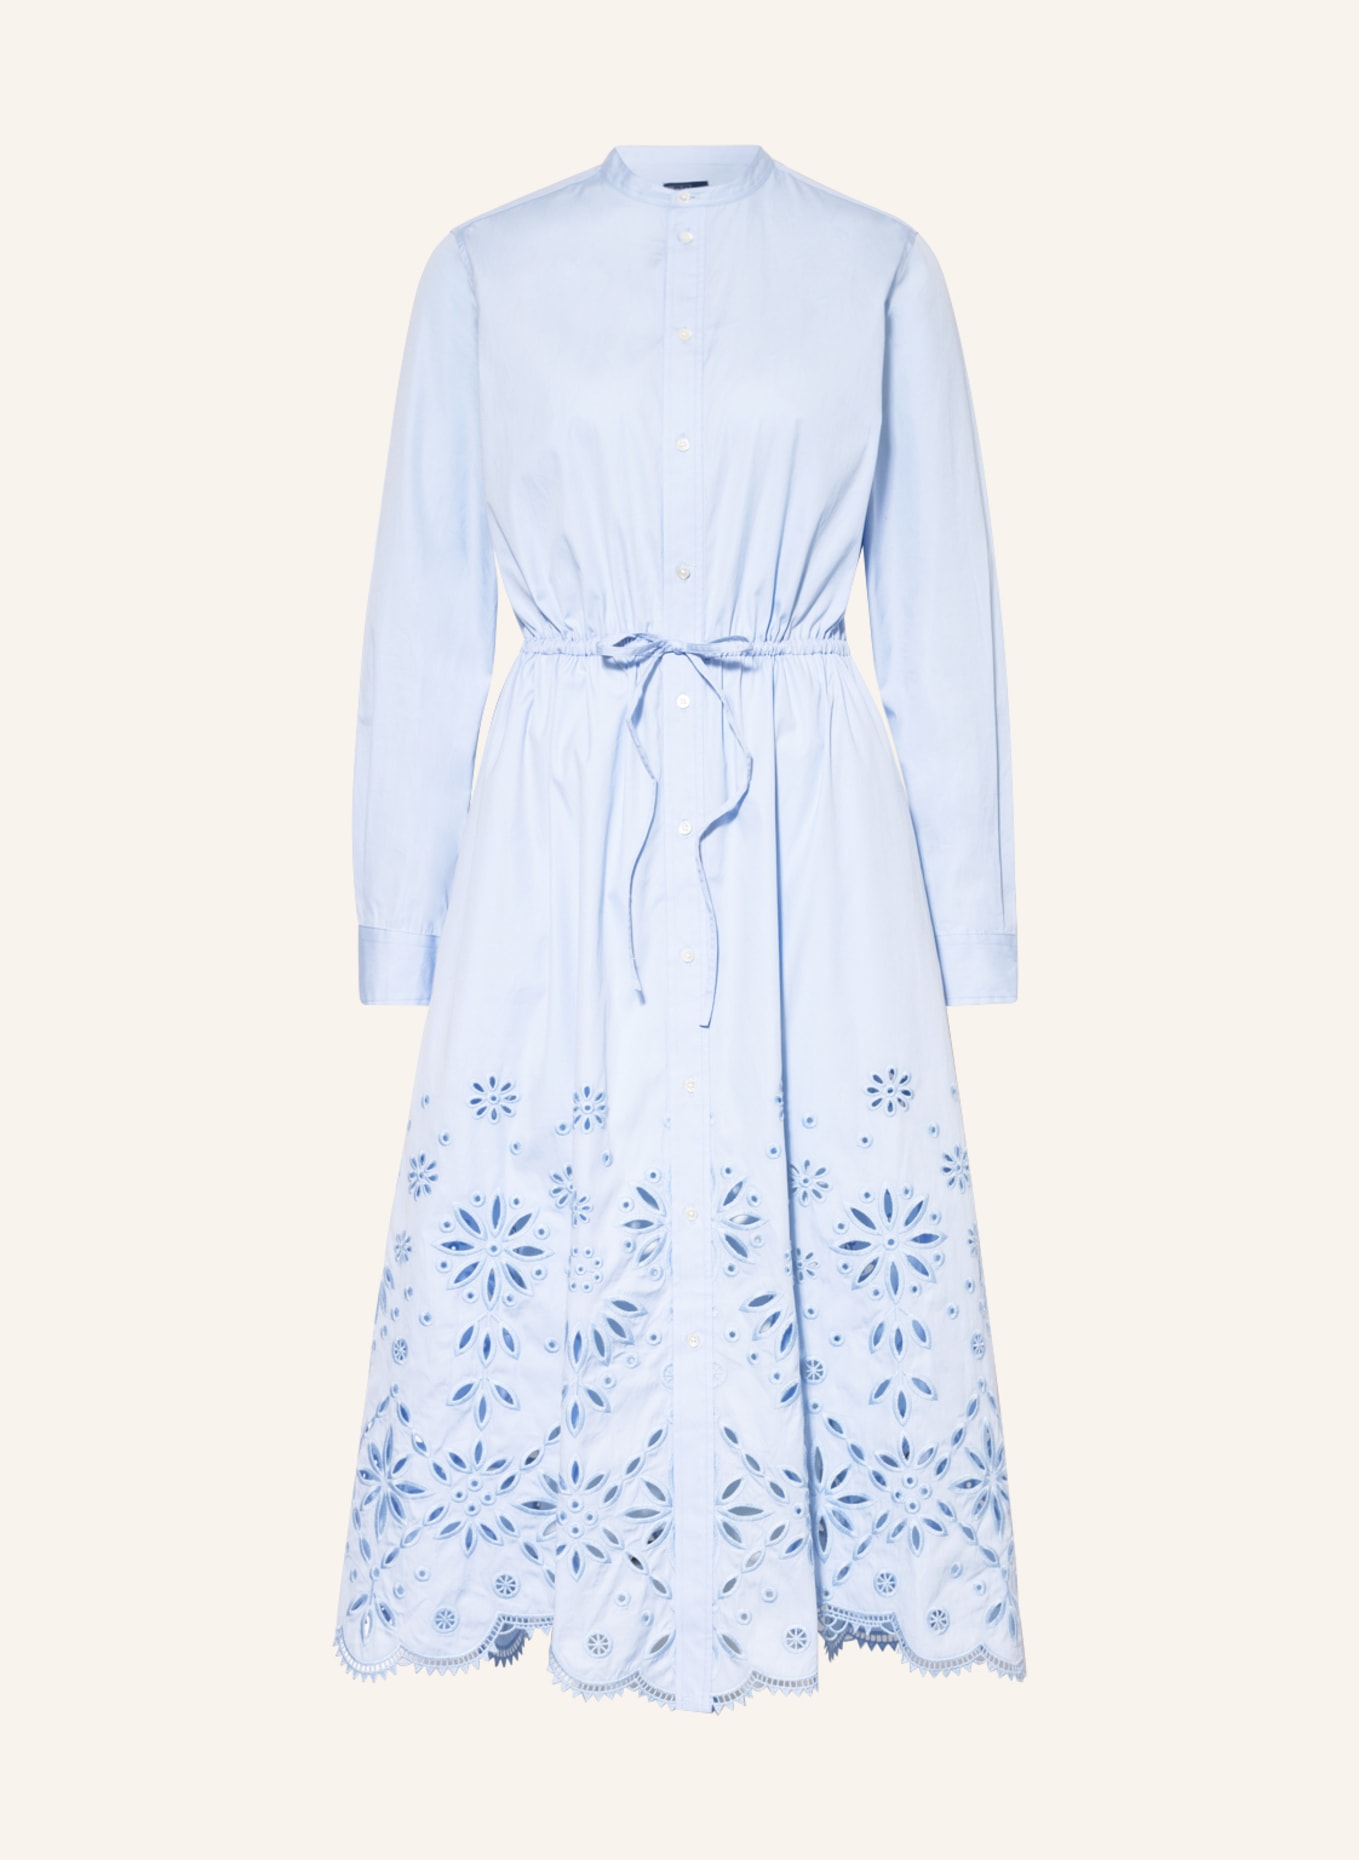 POLO RALPH LAUREN Hemdblusenkleid mit Lochstickereien, Farbe: HELLBLAU (Bild 1)